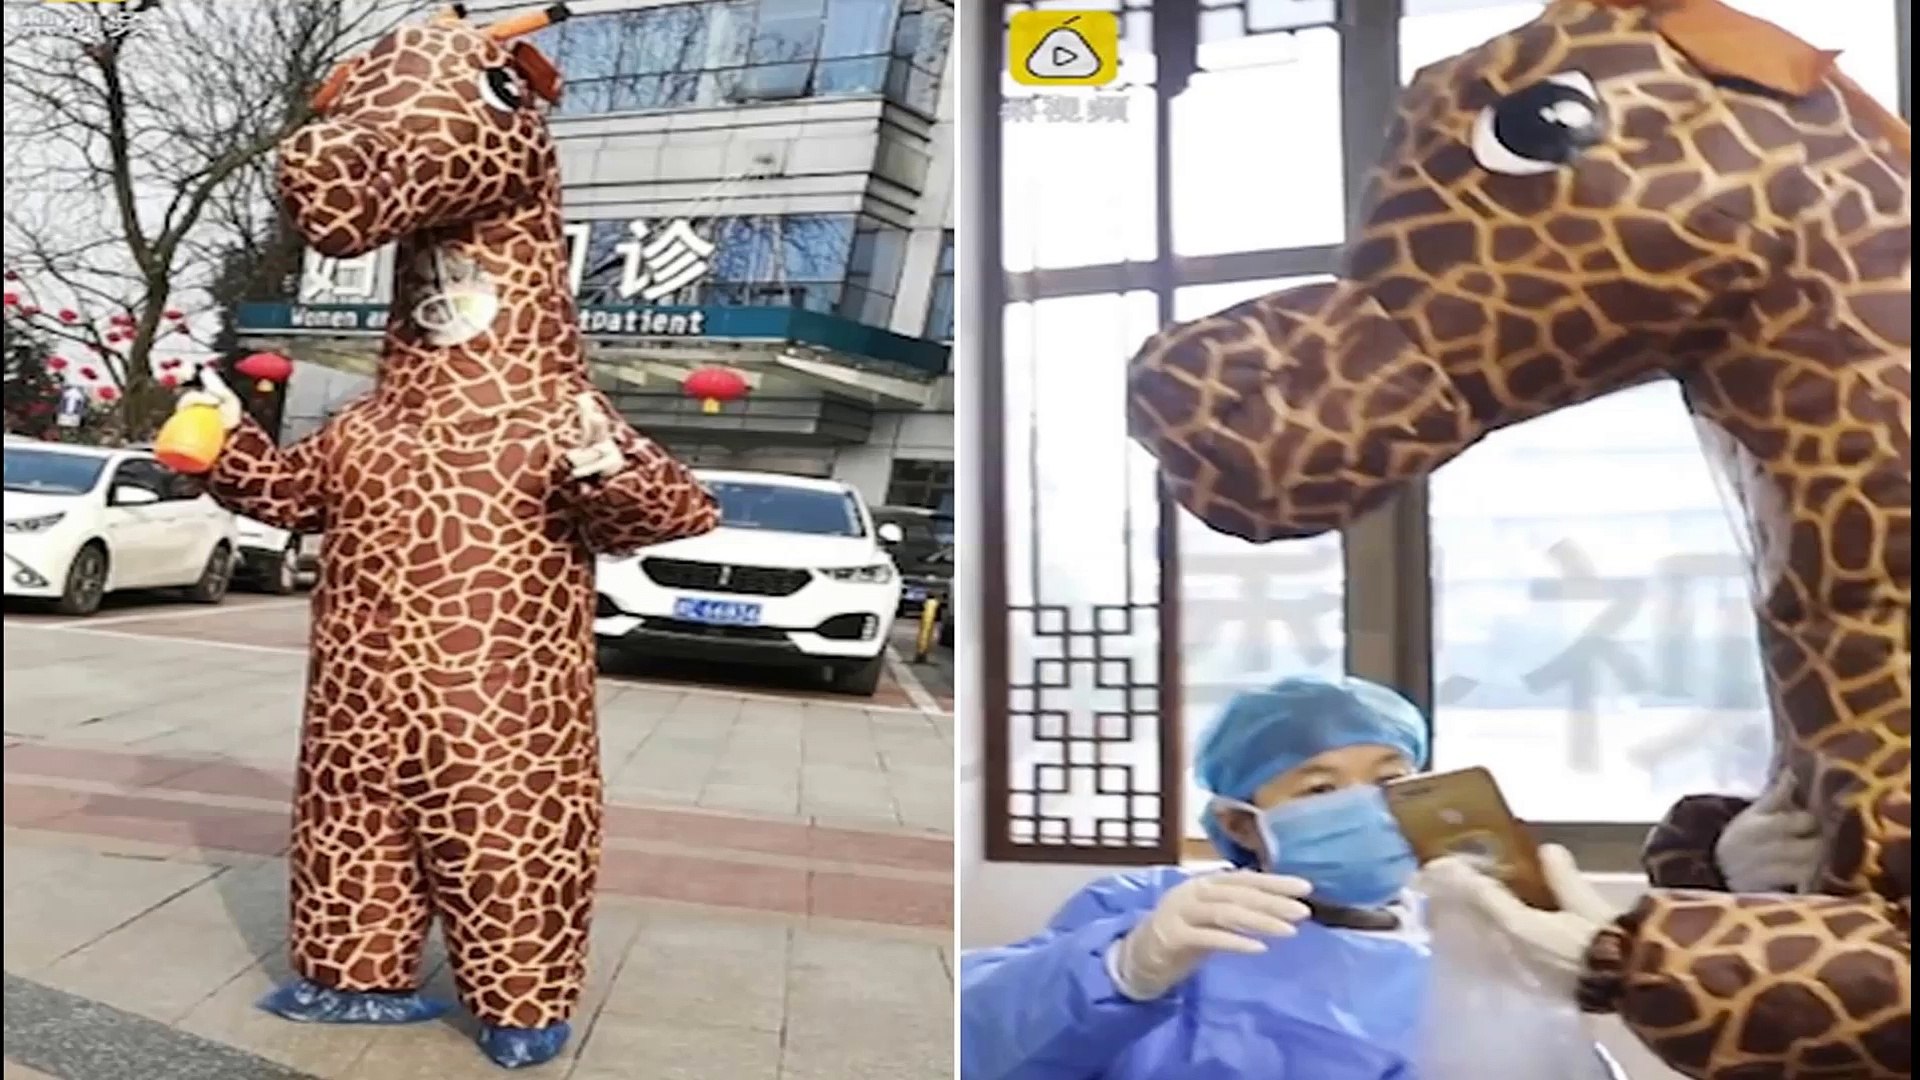 CORONAVIRUS: Woman without mask in coronavirus zone wears giraffe costume to protect herself